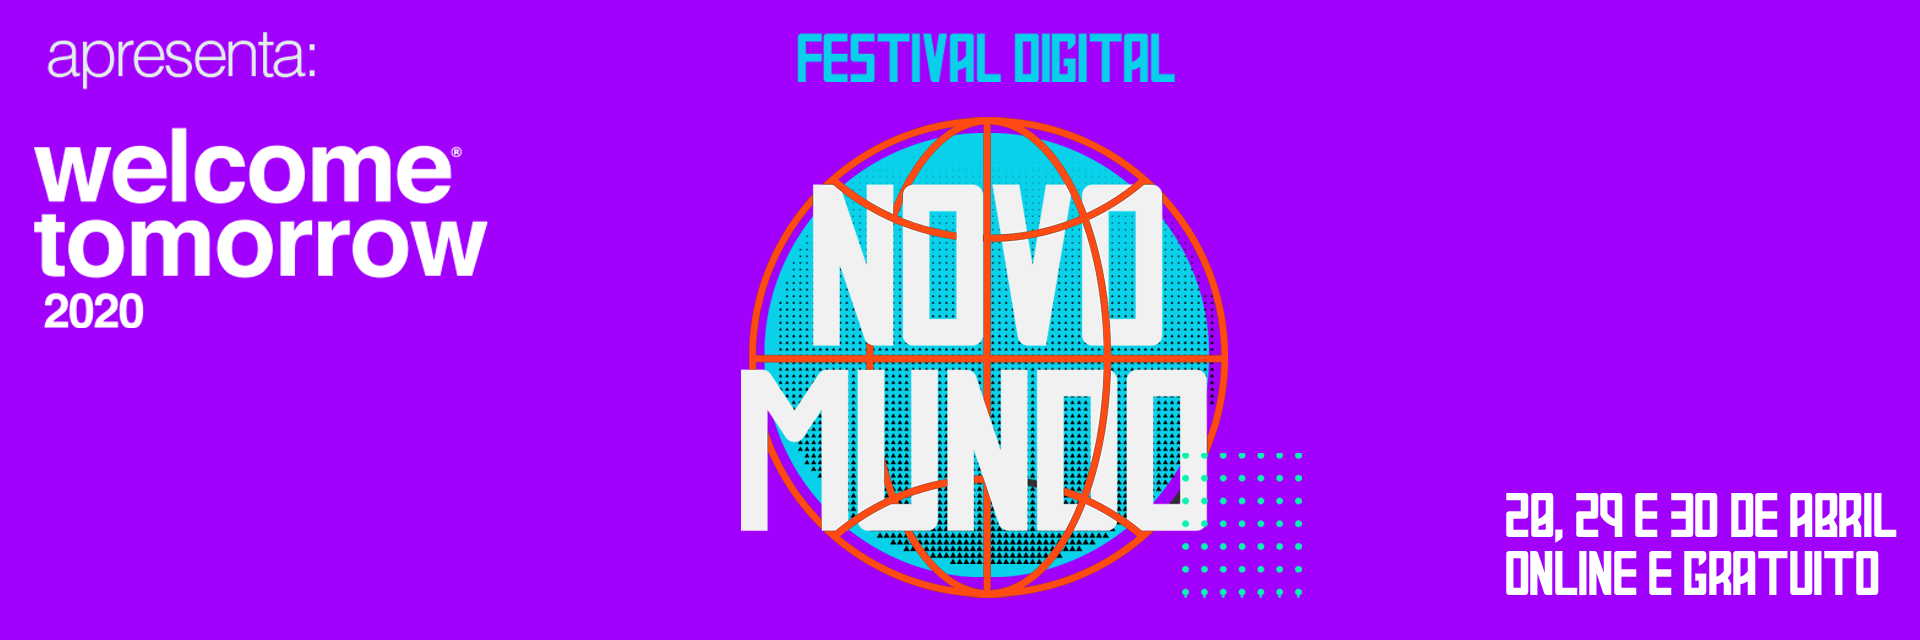 WTW 2020 Festival Digital Novo Mundo - CTA